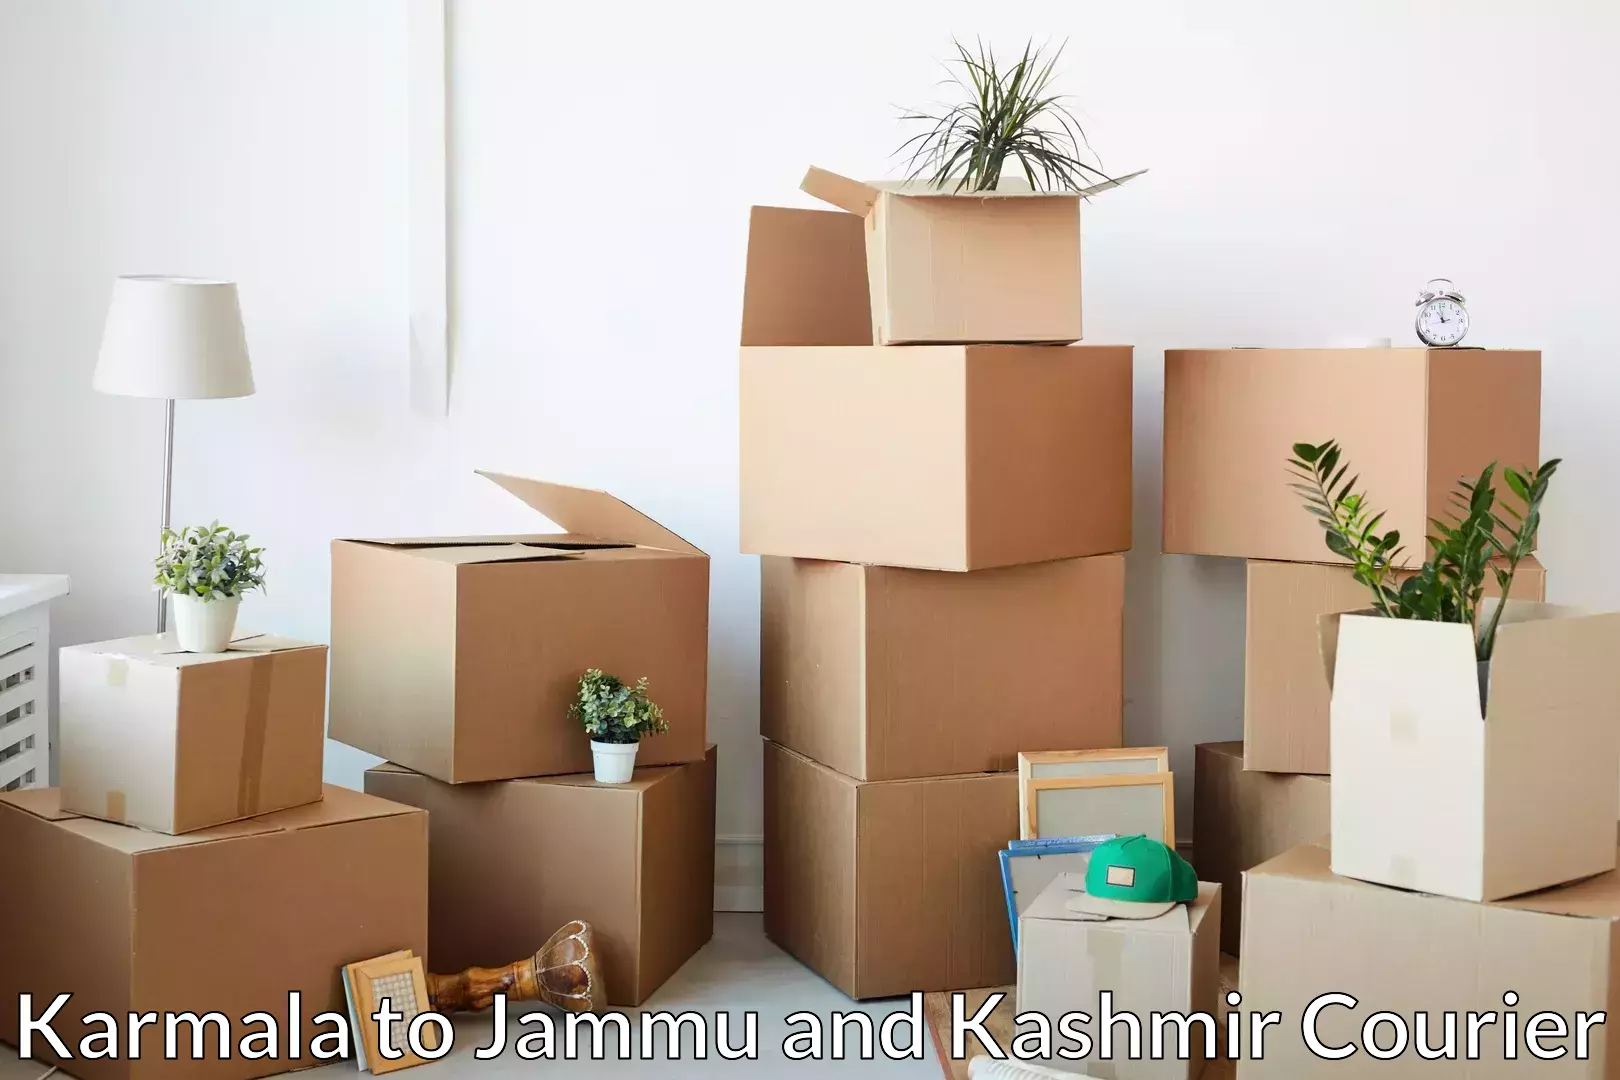 Reliable movers Karmala to Katra